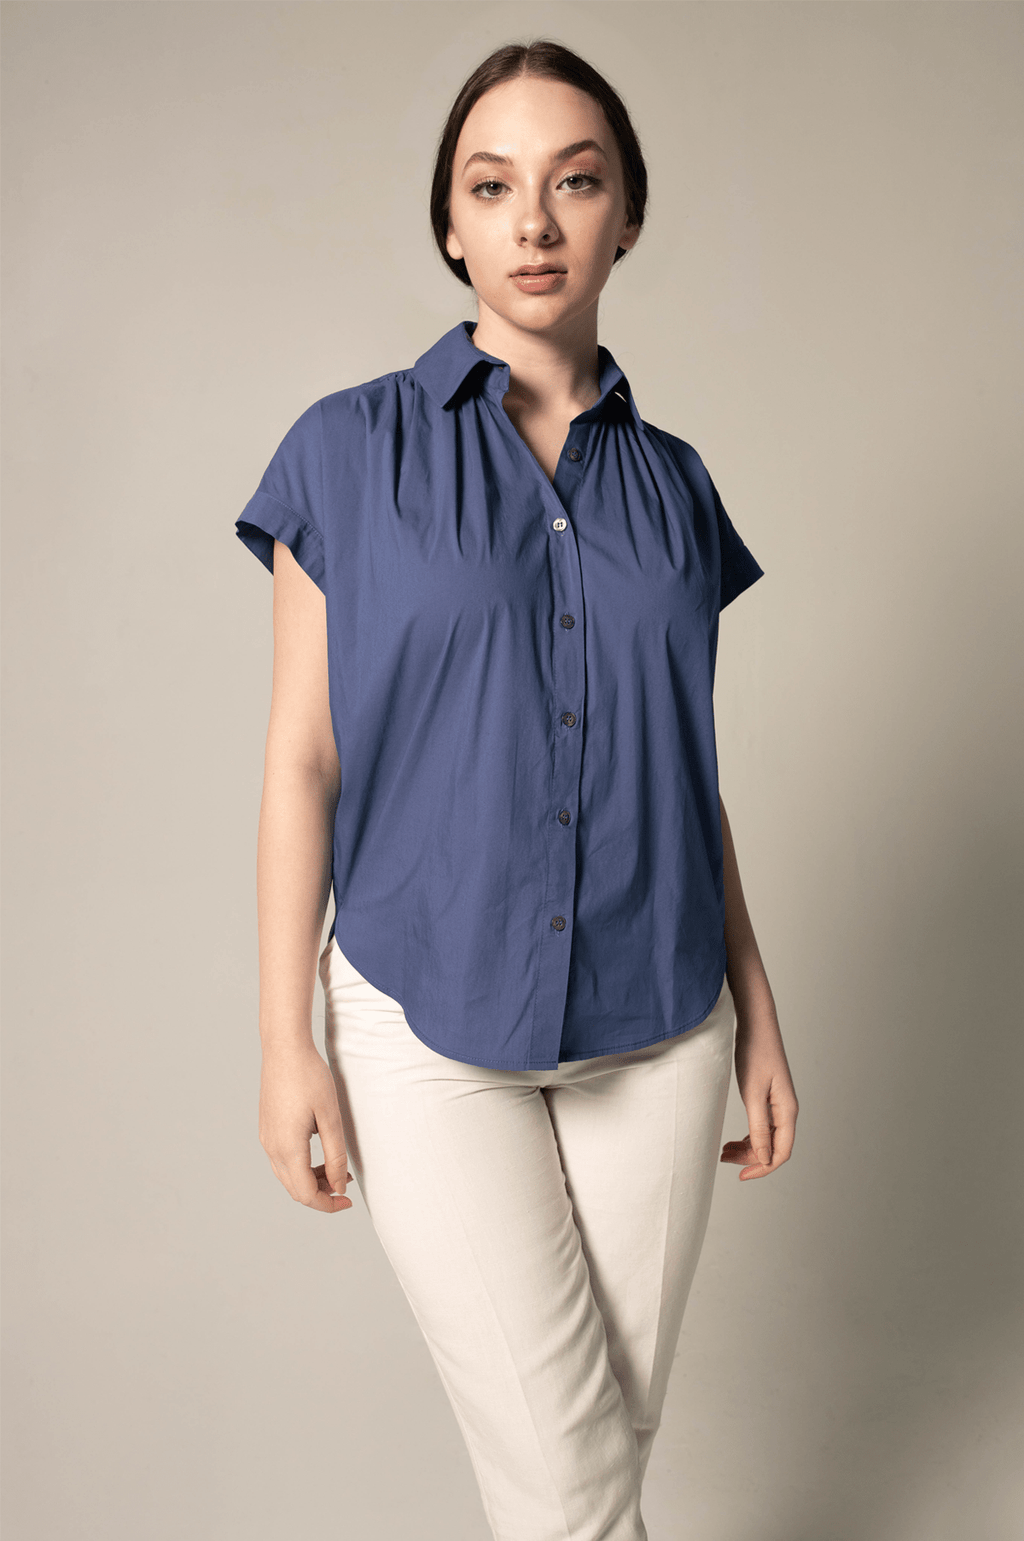 Le Réussi Women's Blouse Women's Gather Collar Shirt in Navy | Le Réussi